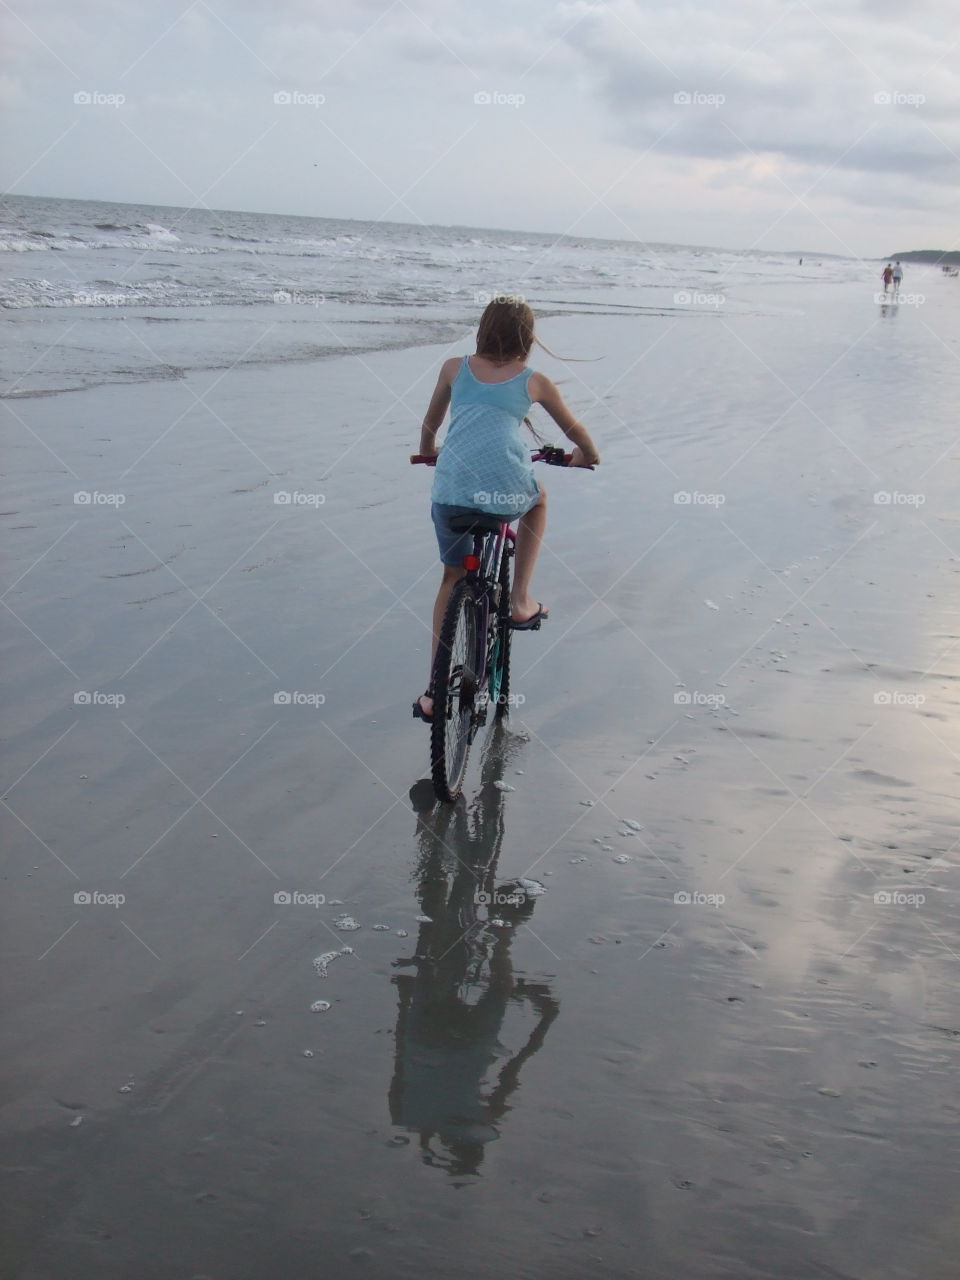 Bike ride on the beach